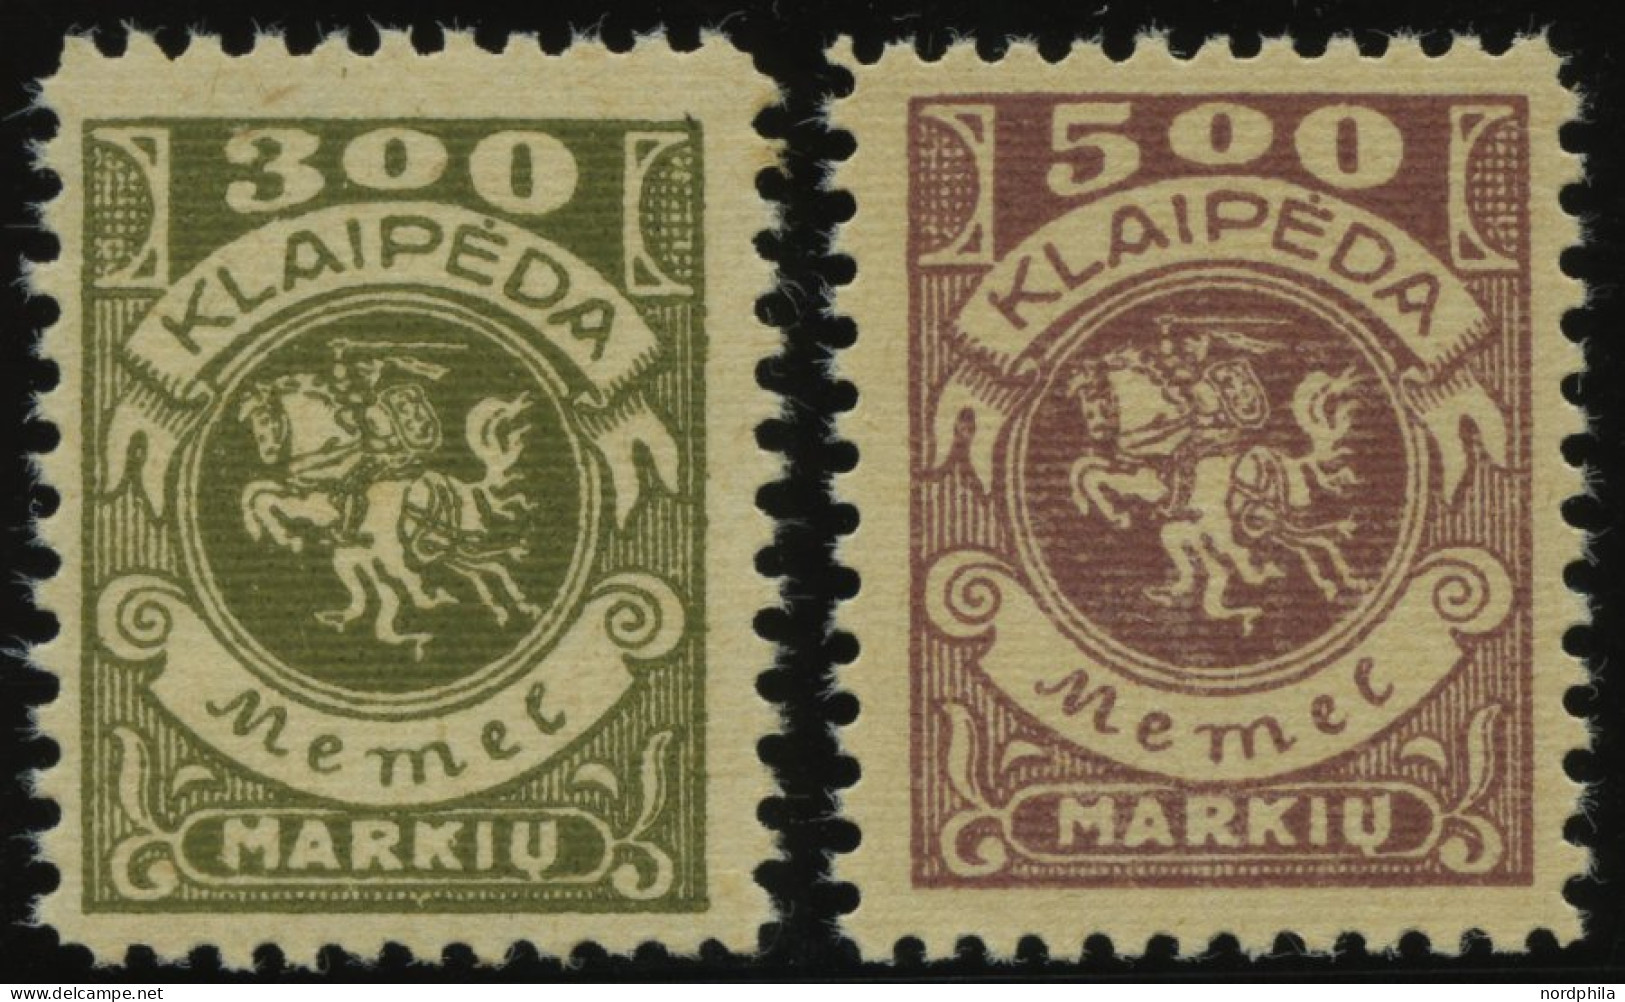 MEMELGEBIET 147,149 **, 1923, 300 M. Oliv Und 500 M. Graulila, Postfrisch, 2 Prachtwerte, Mi. 180.- - Memel (Klaipeda) 1923